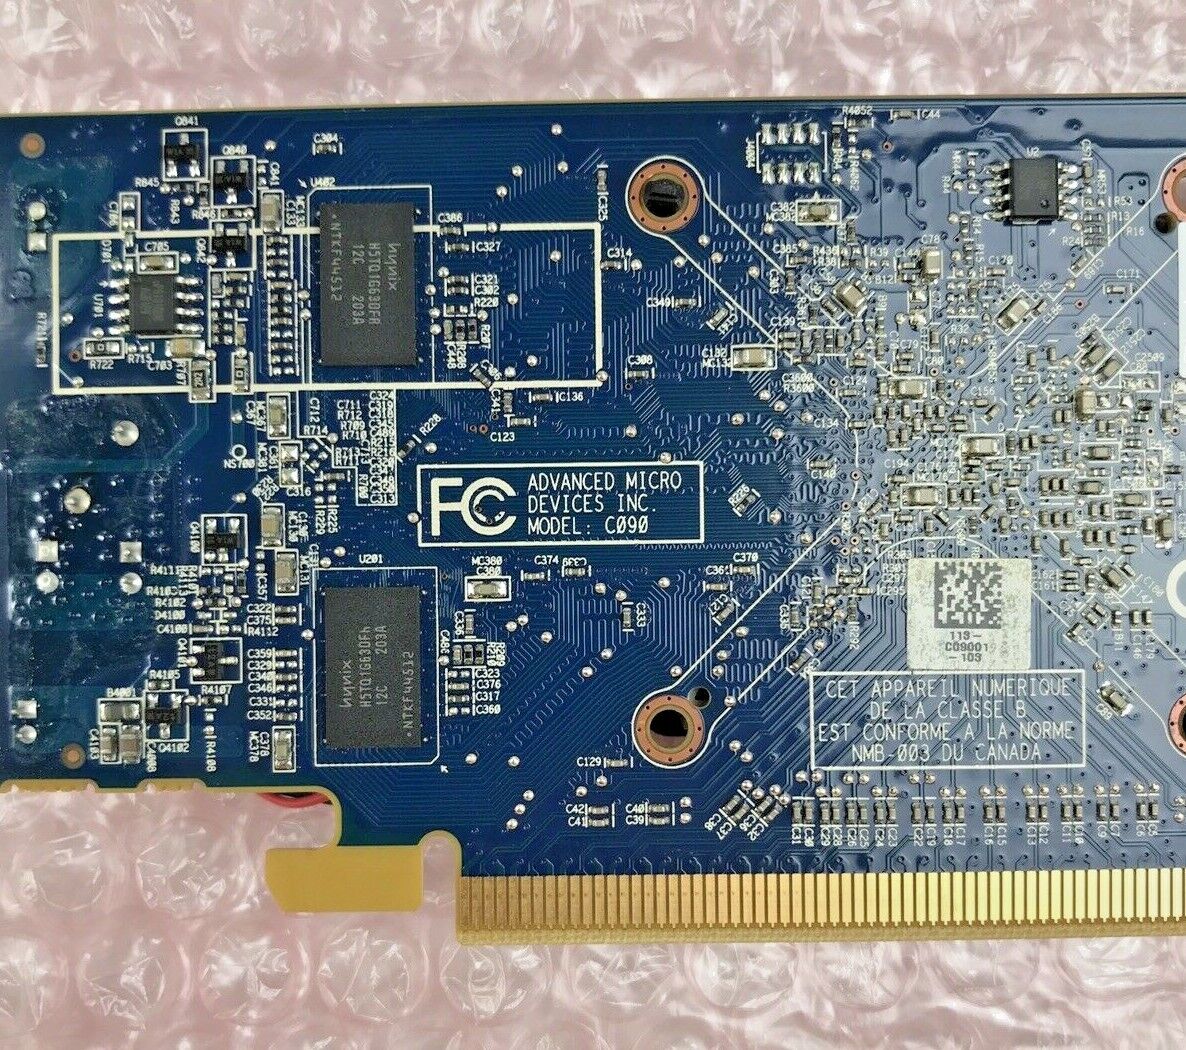 ATI Radeon Dual Monitor 512MB Video Card ATI-102-C09003 B